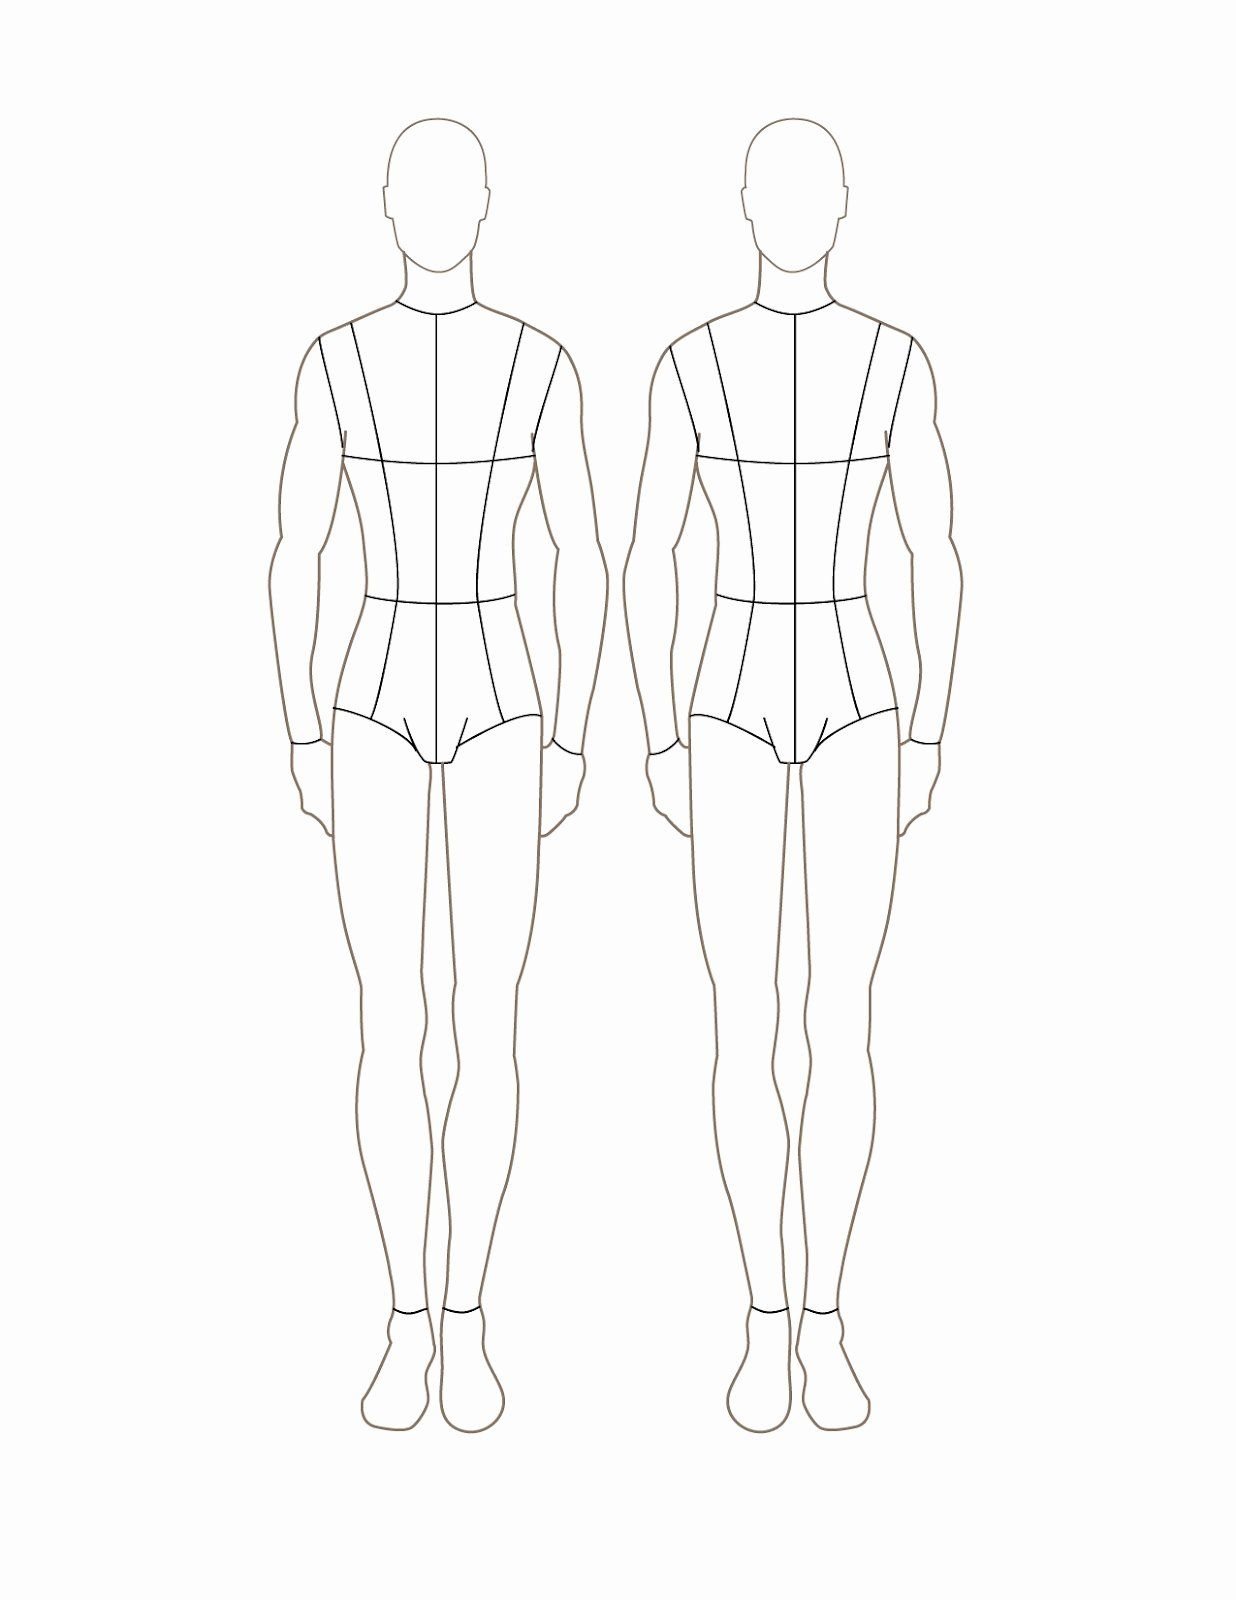 Мужская фигура для моделирования одежды